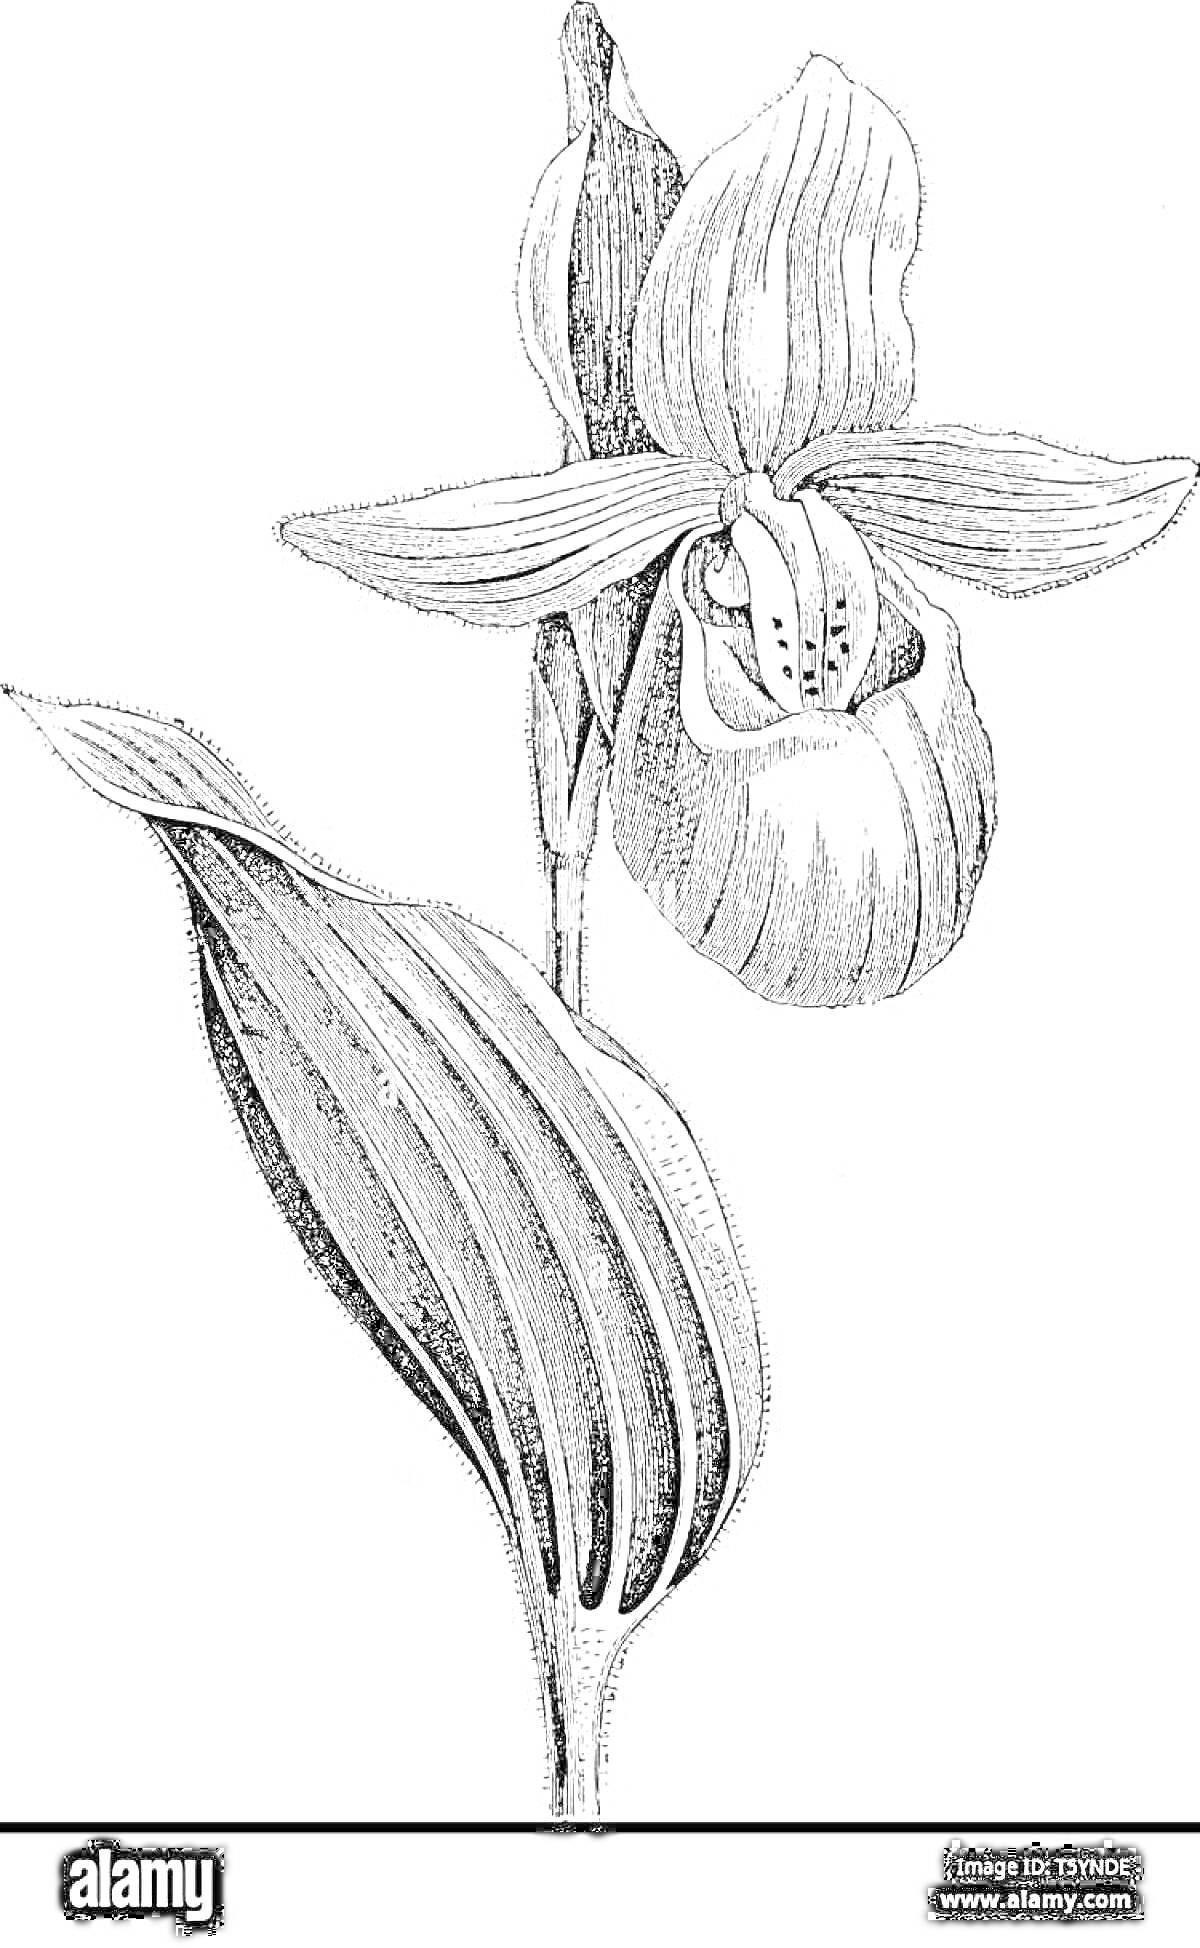 Раскраска Чёрно-белая раскраска цветка венерин башмачок с одним цветком и одним листом